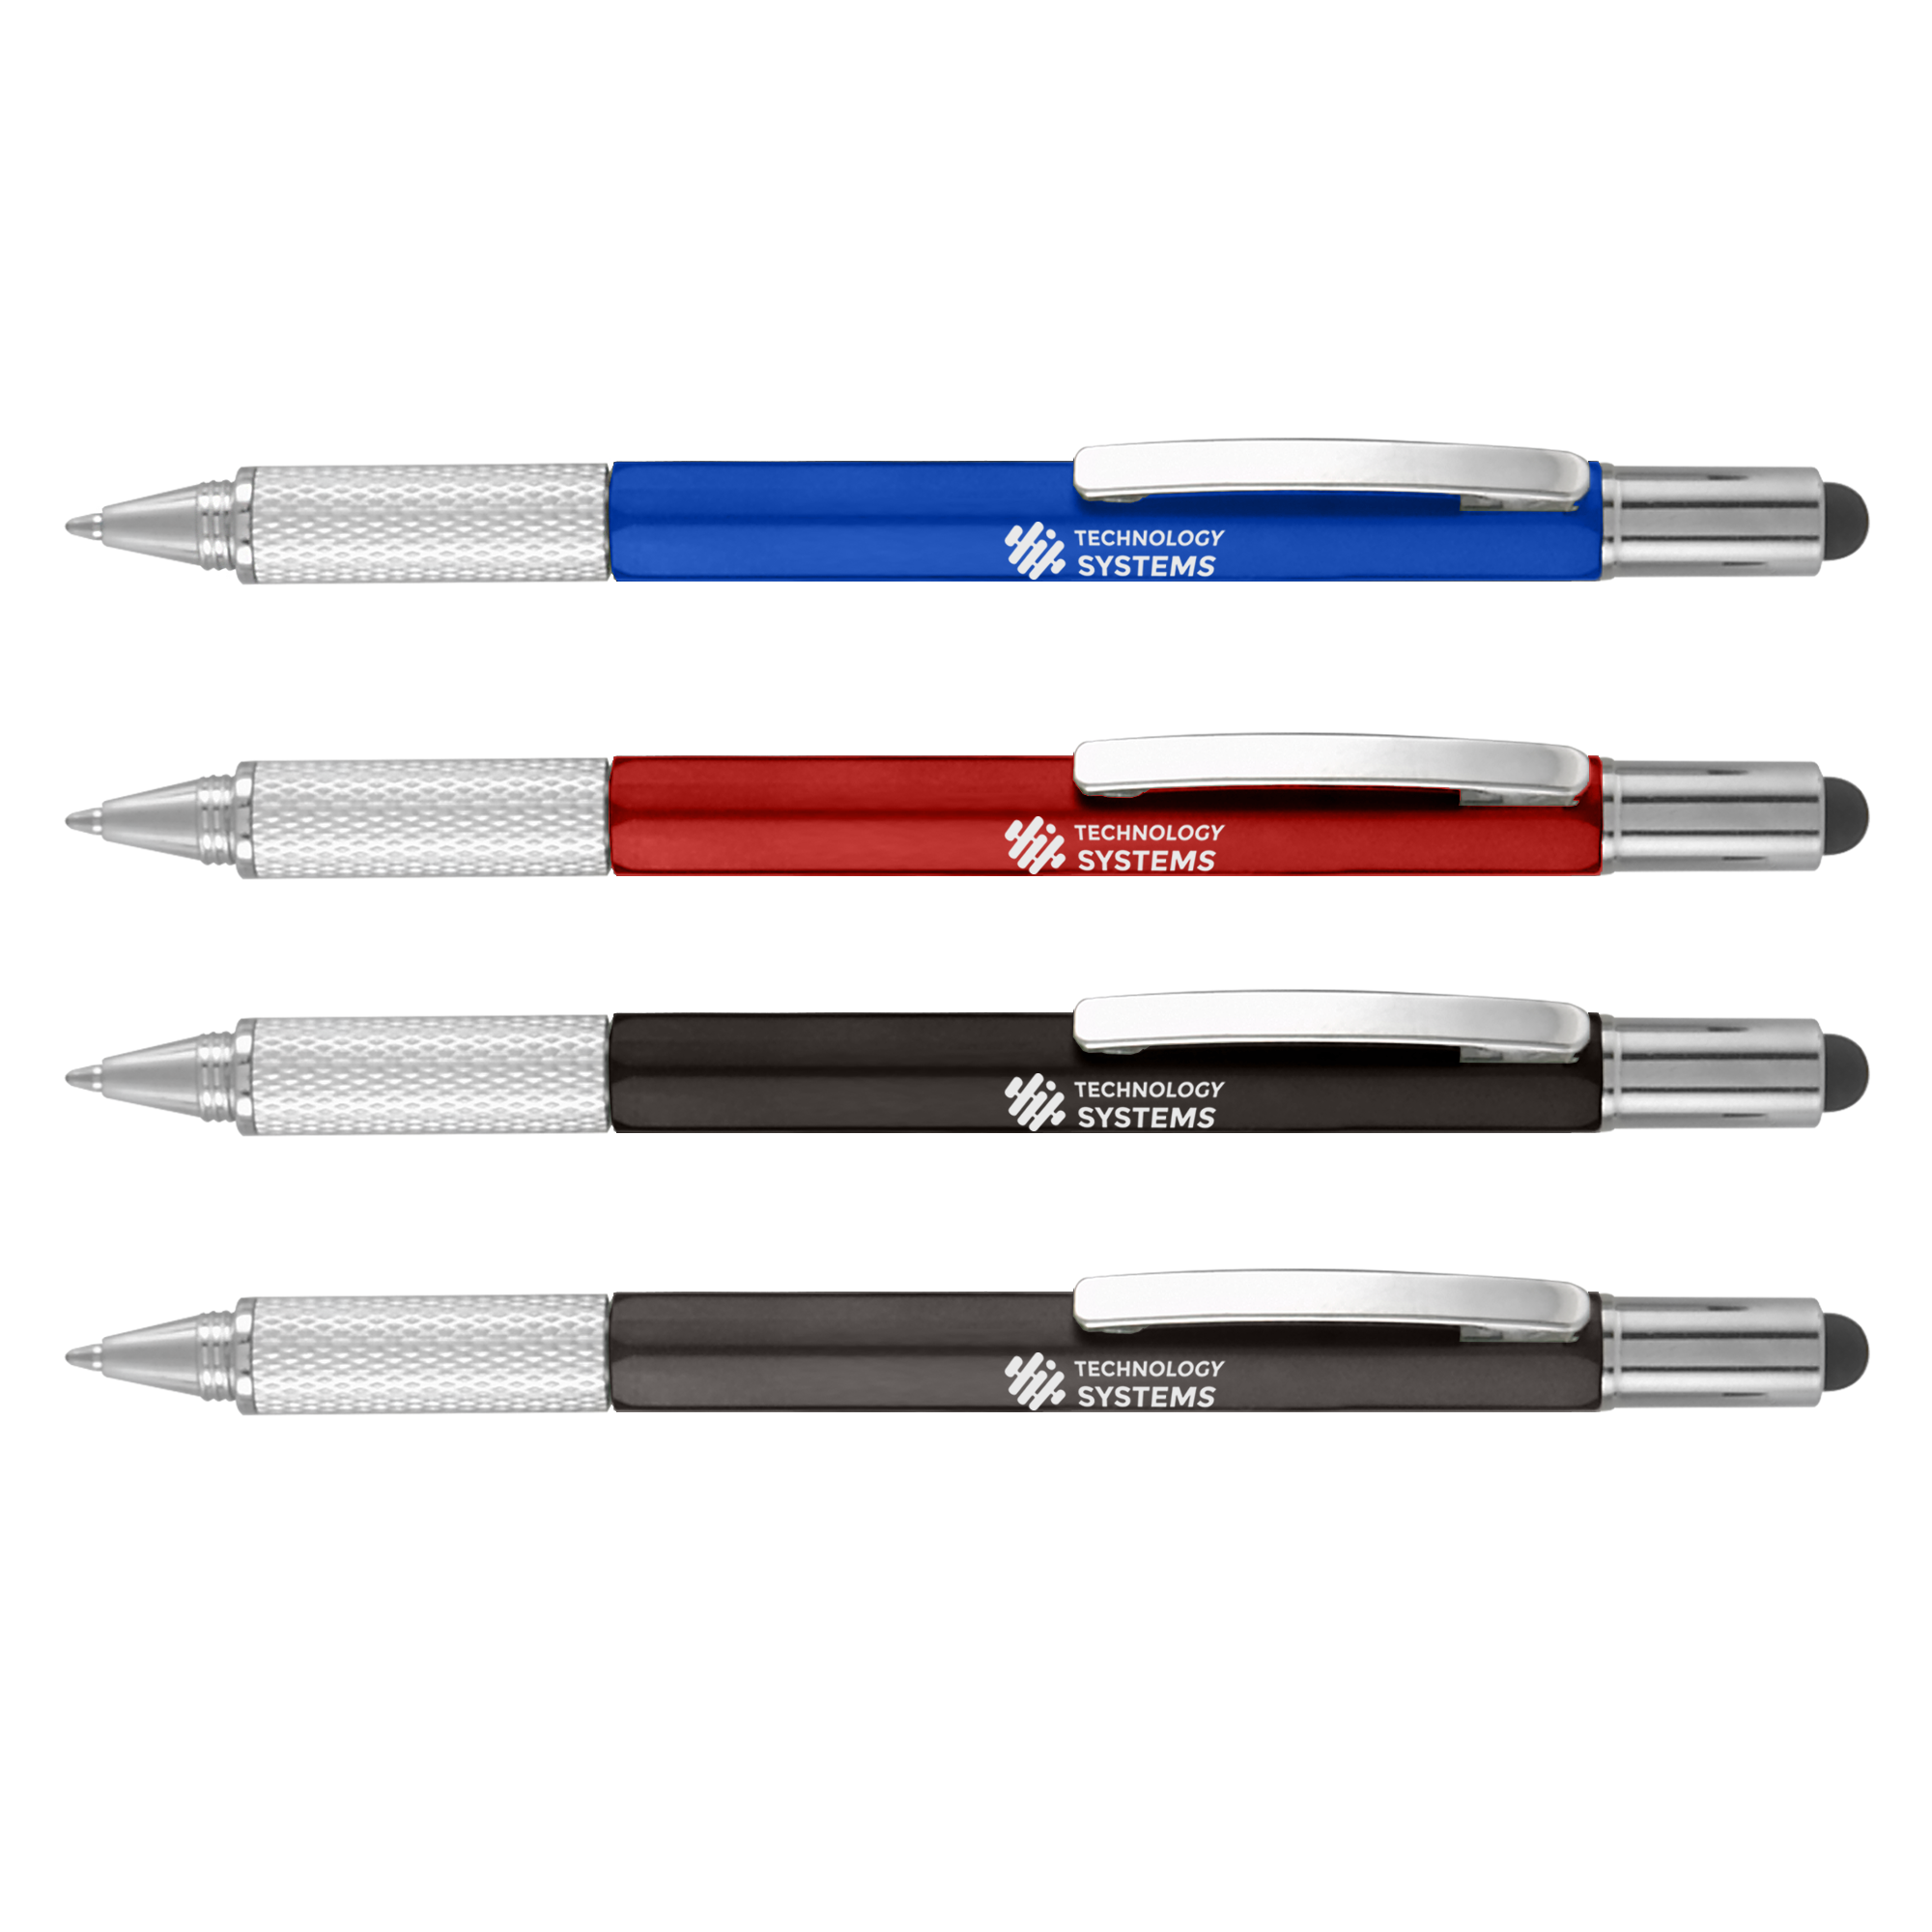 Pivo® Clear Chrome Twist-Action Pen